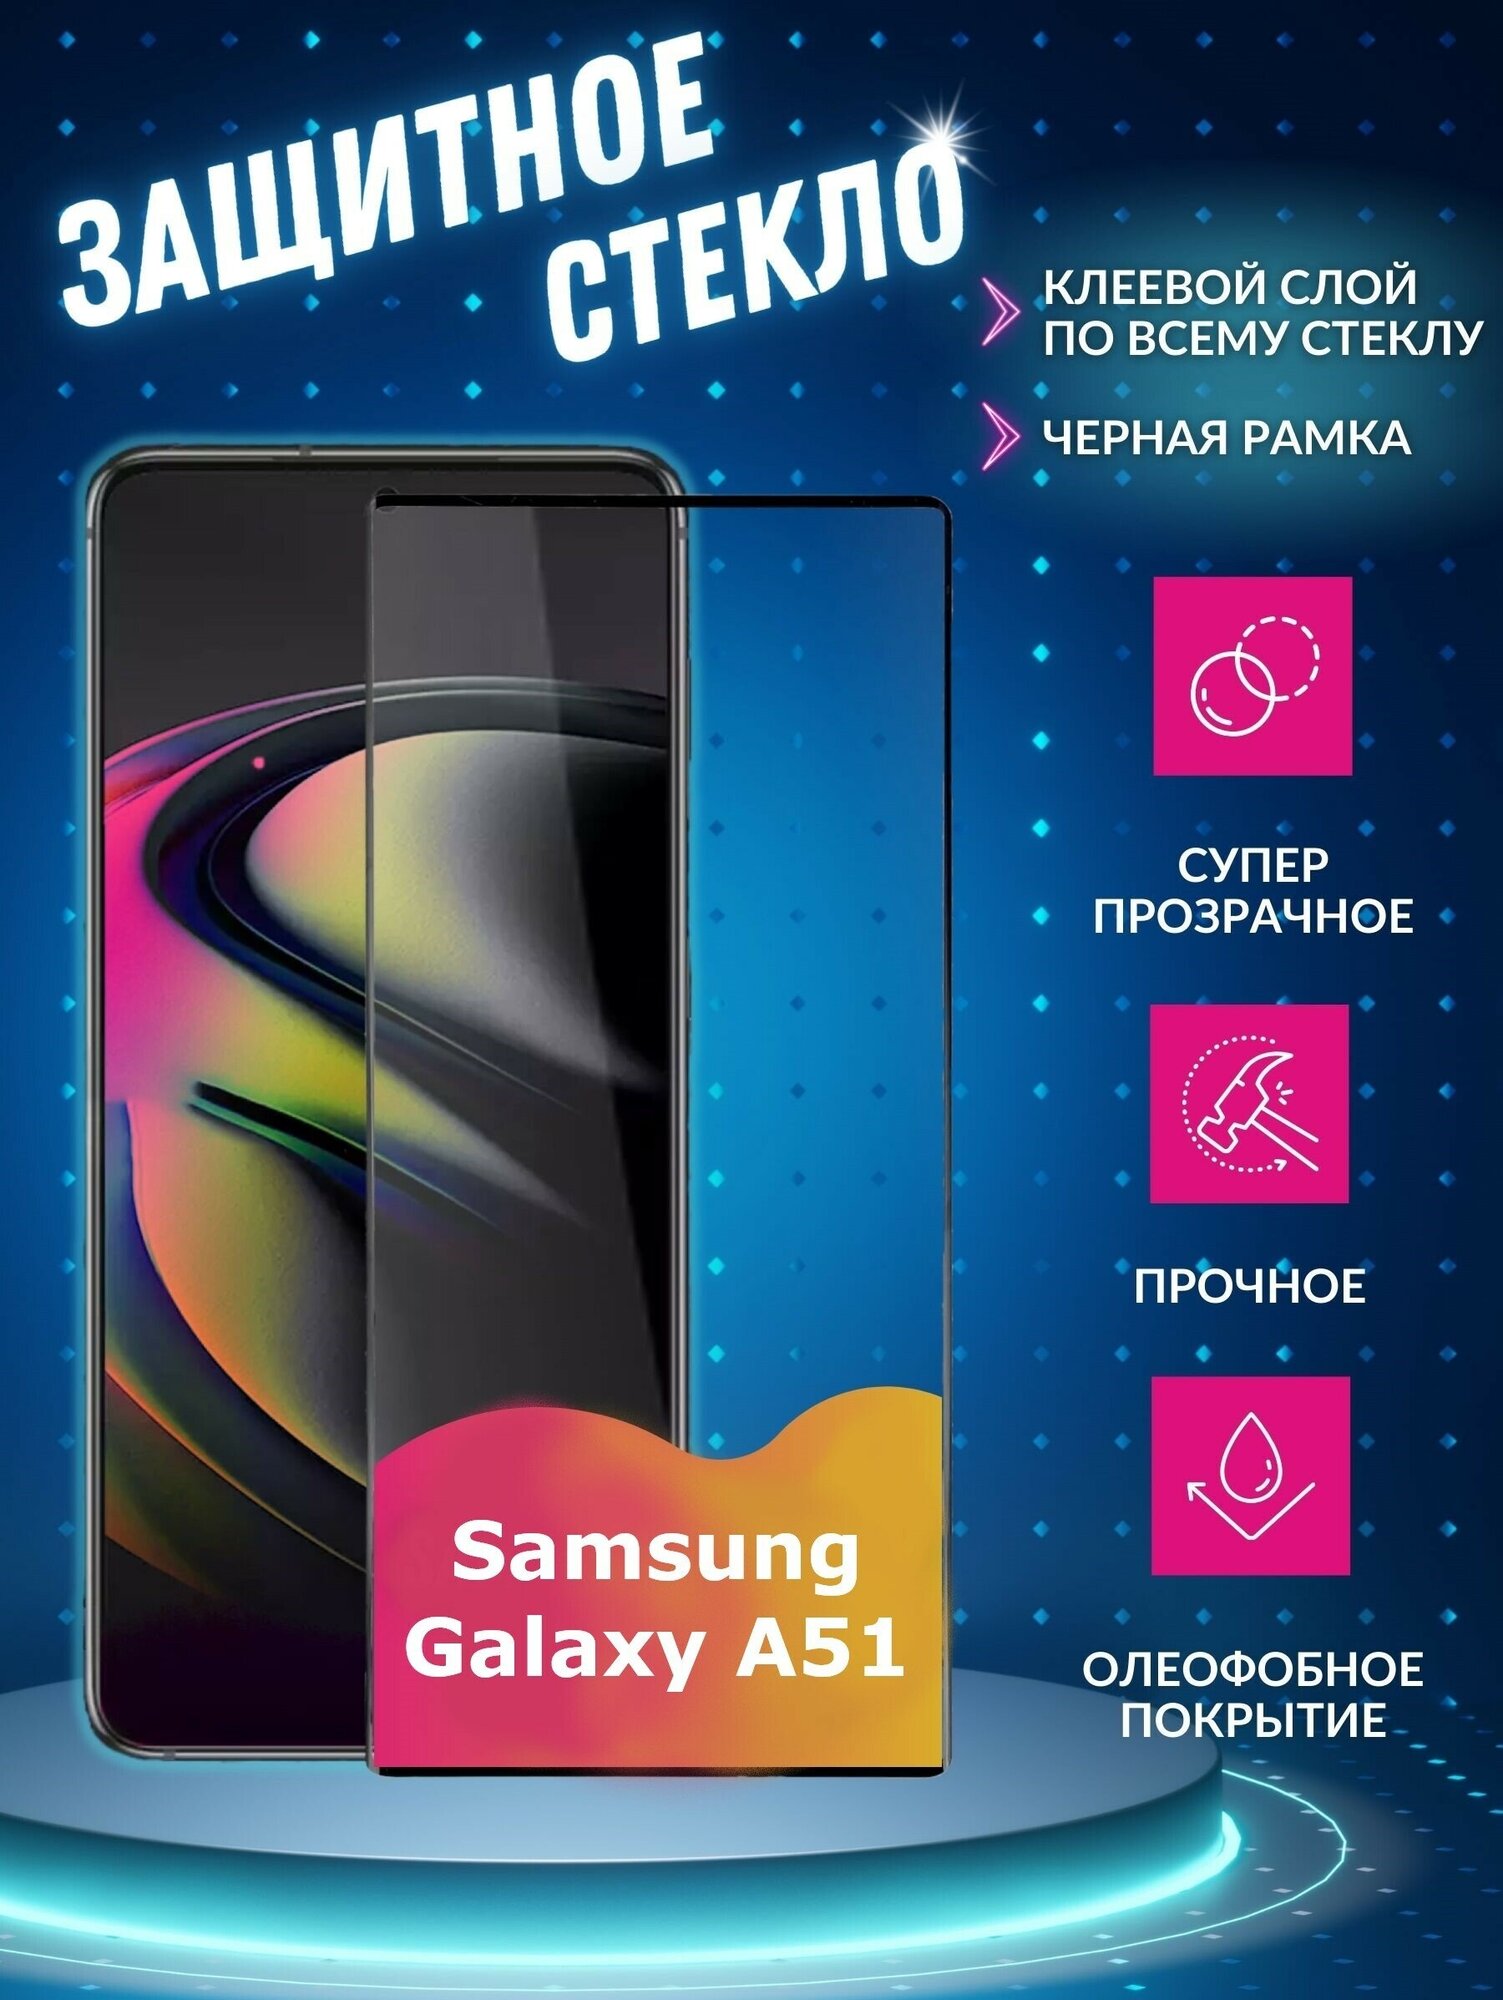 Защитный экран для смартфона Samsung Galaxy A51 Full screen tempered glass FULL GLUE RED LINE черная рамка